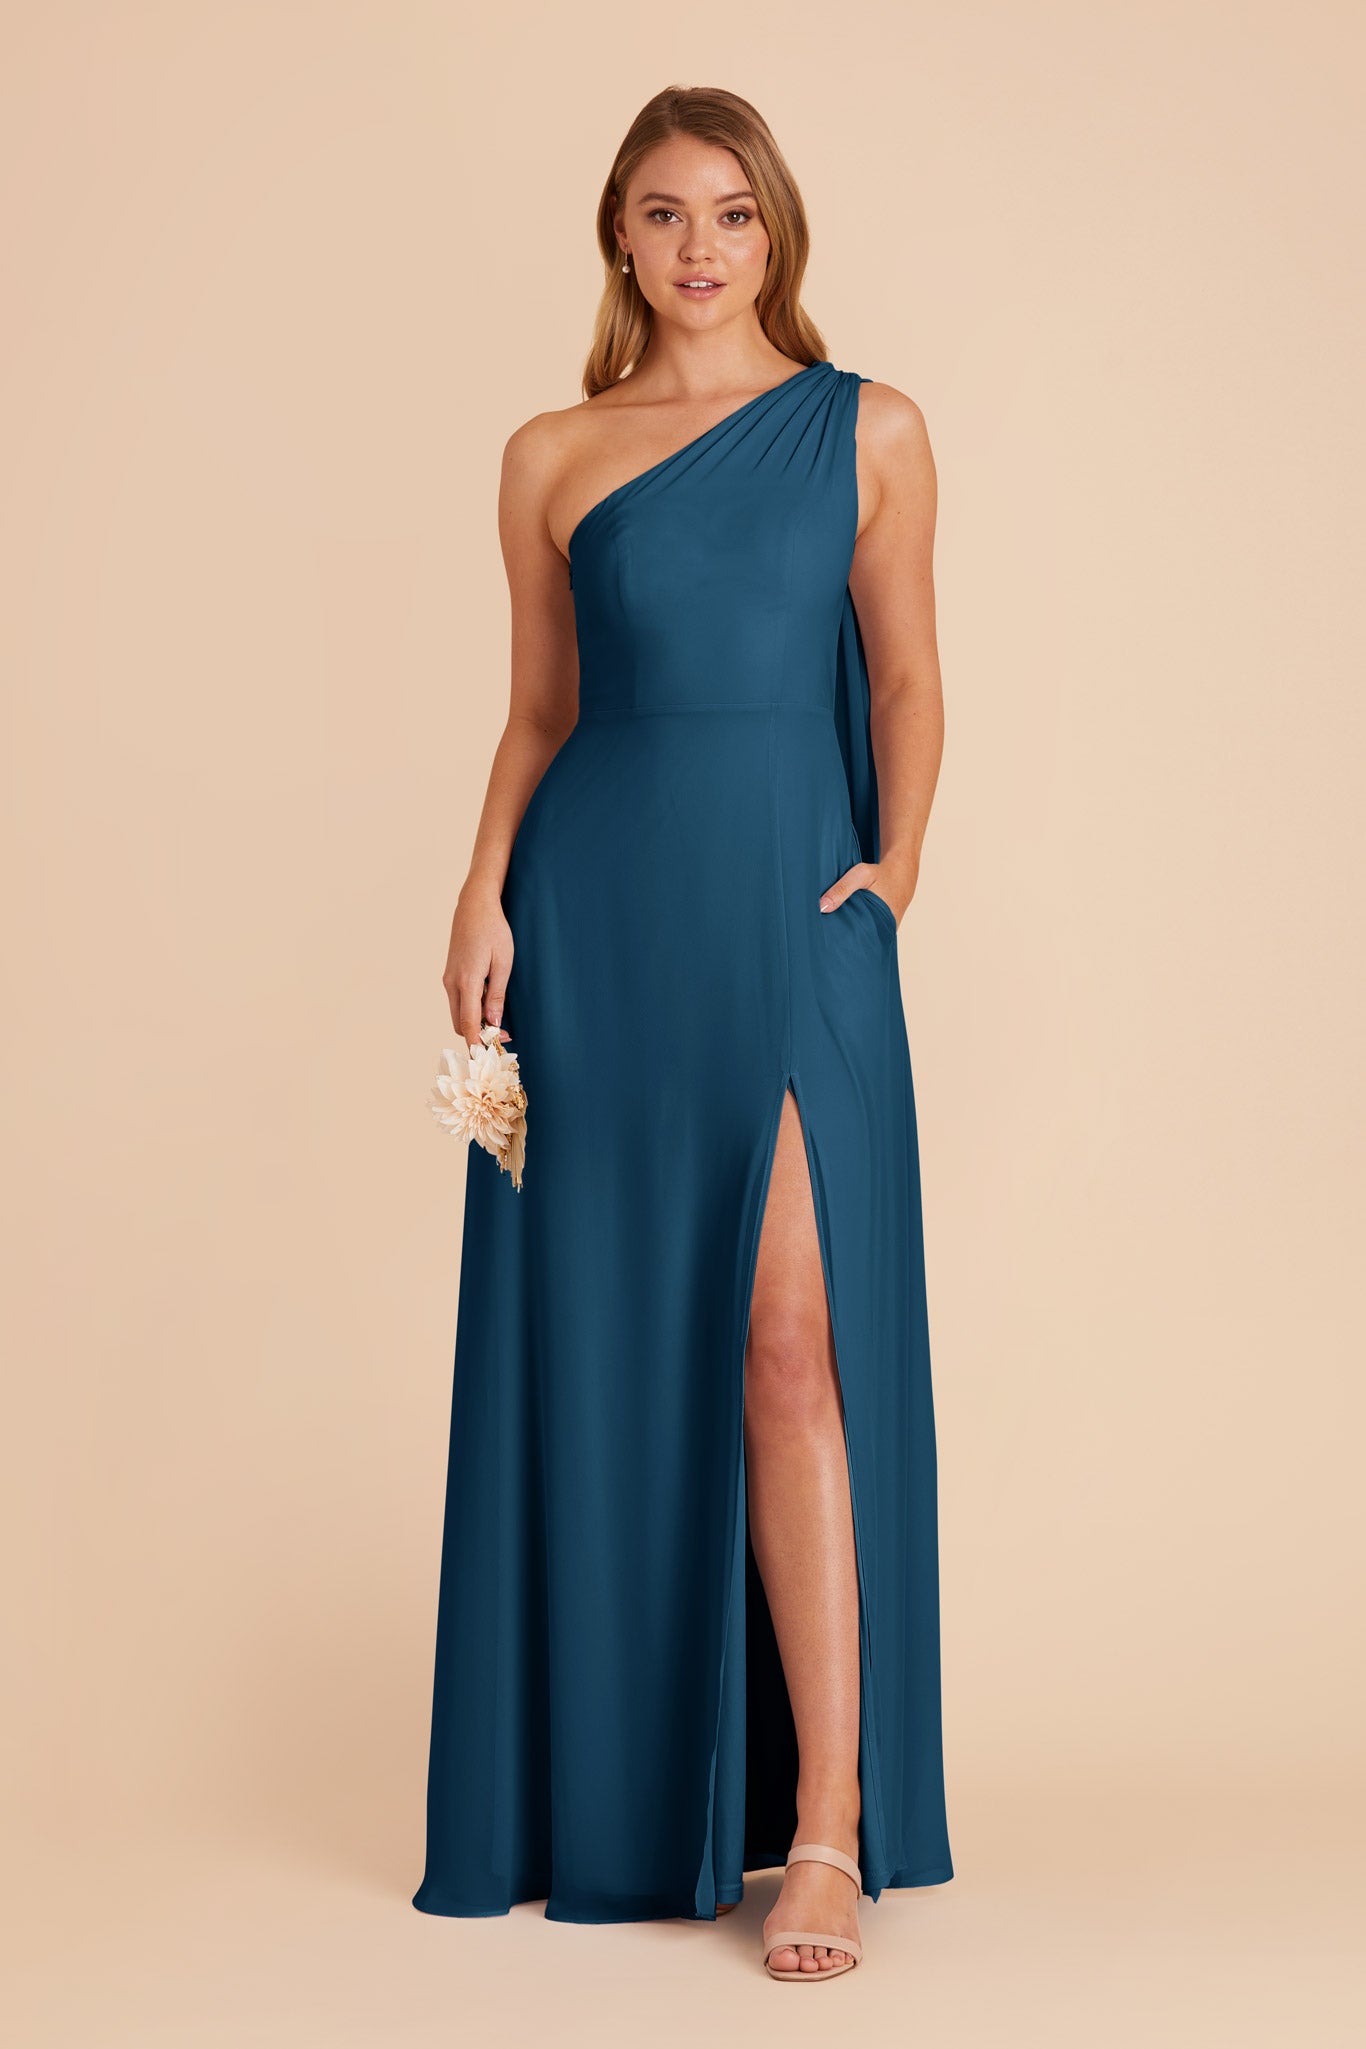 Ocean Blue Melissa Chiffon Dress by Birdy Grey